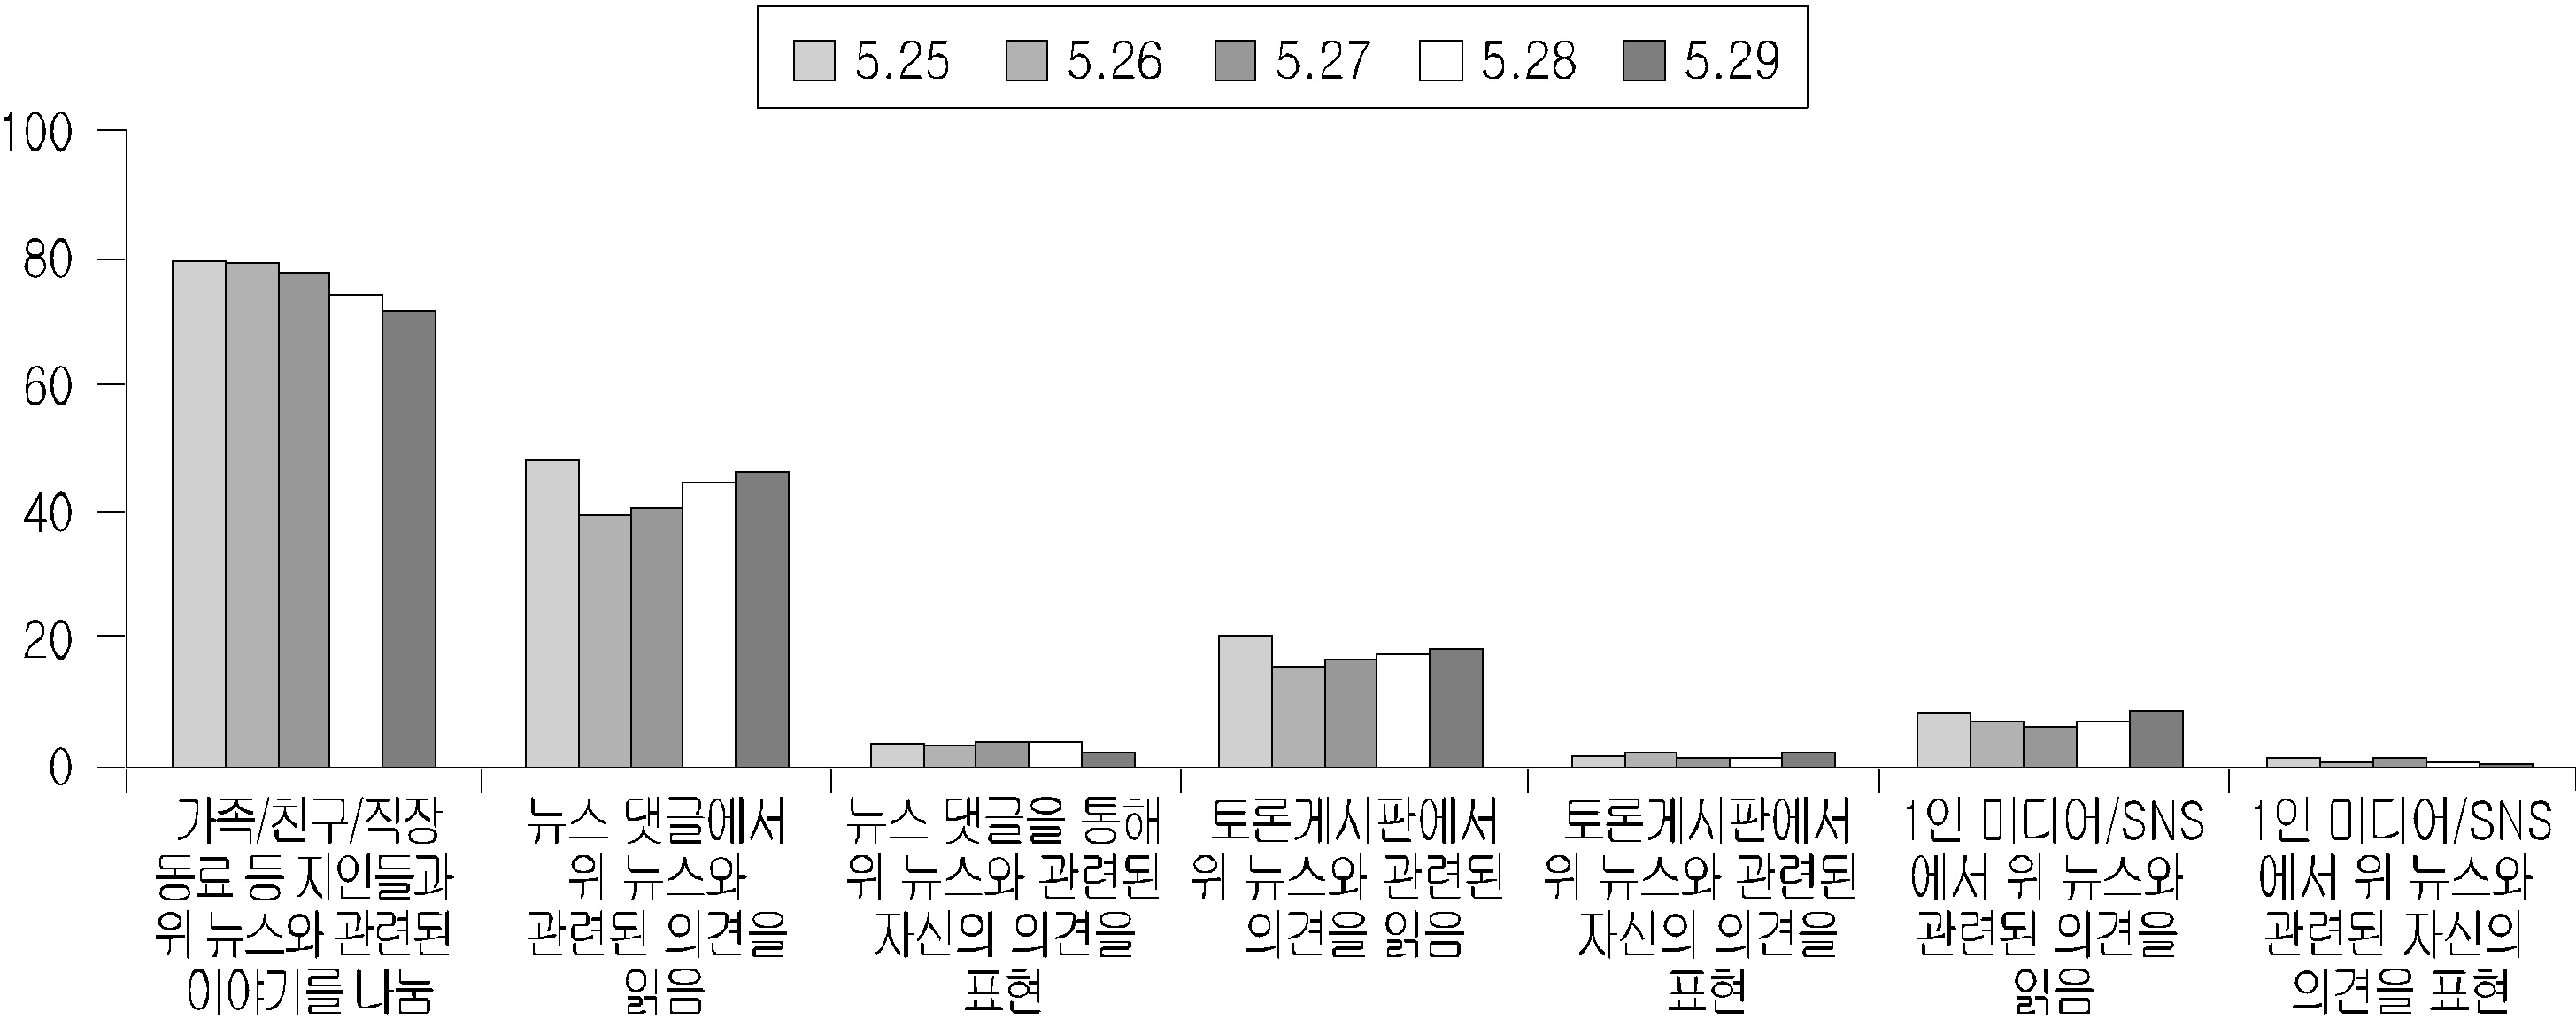 천안함 관련 오프라인 대화 및 온라인 의견 읽기/쓰기 (2～6차 조사)